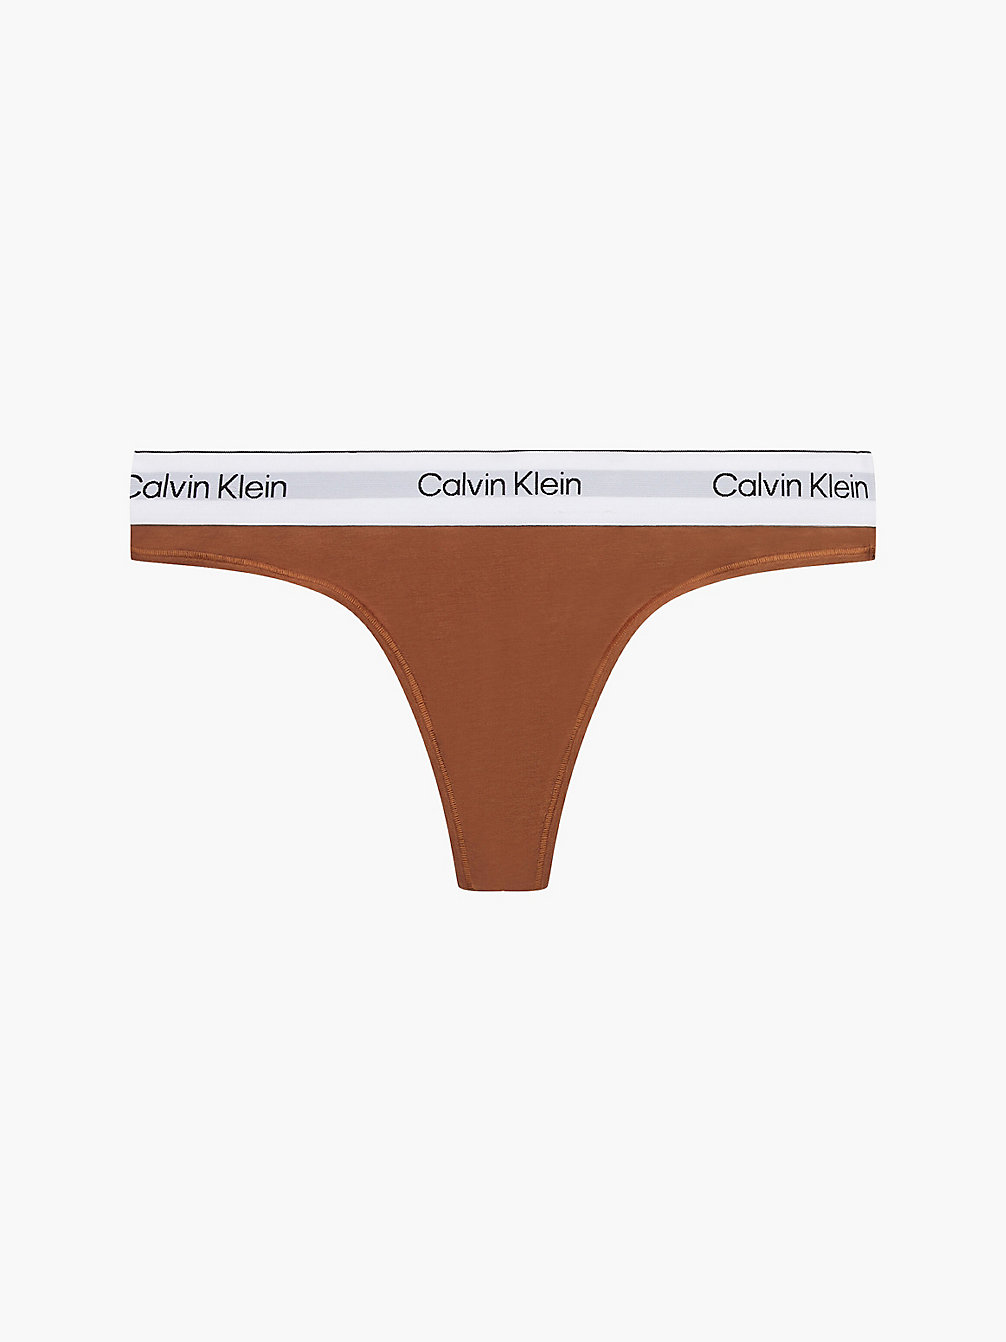 WARM BRONZE > String - Modern Cotton > undefined dames - Calvin Klein